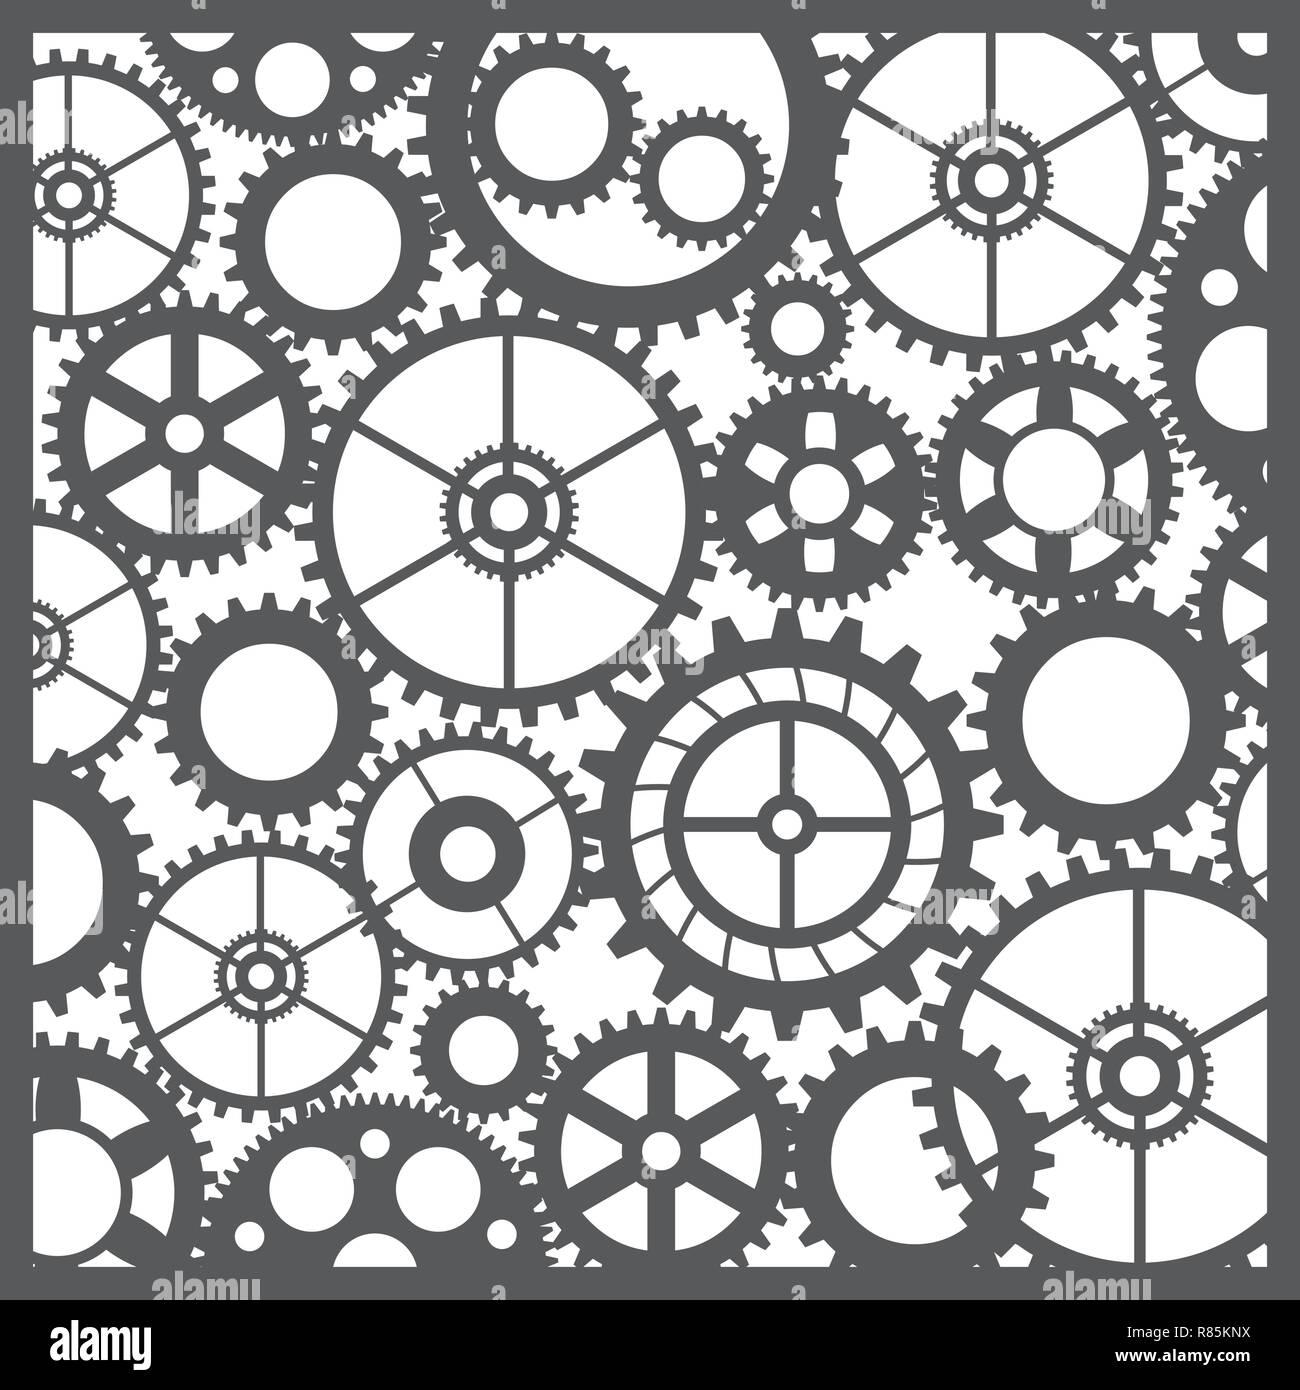 Muster silhouette Zahnräder mechanische Maschine Teile Uhr Zahnrad. Design  für Scrapbooking, Visitenkarten, Hintergrund für das Handwerk  Stock-Vektorgrafik - Alamy